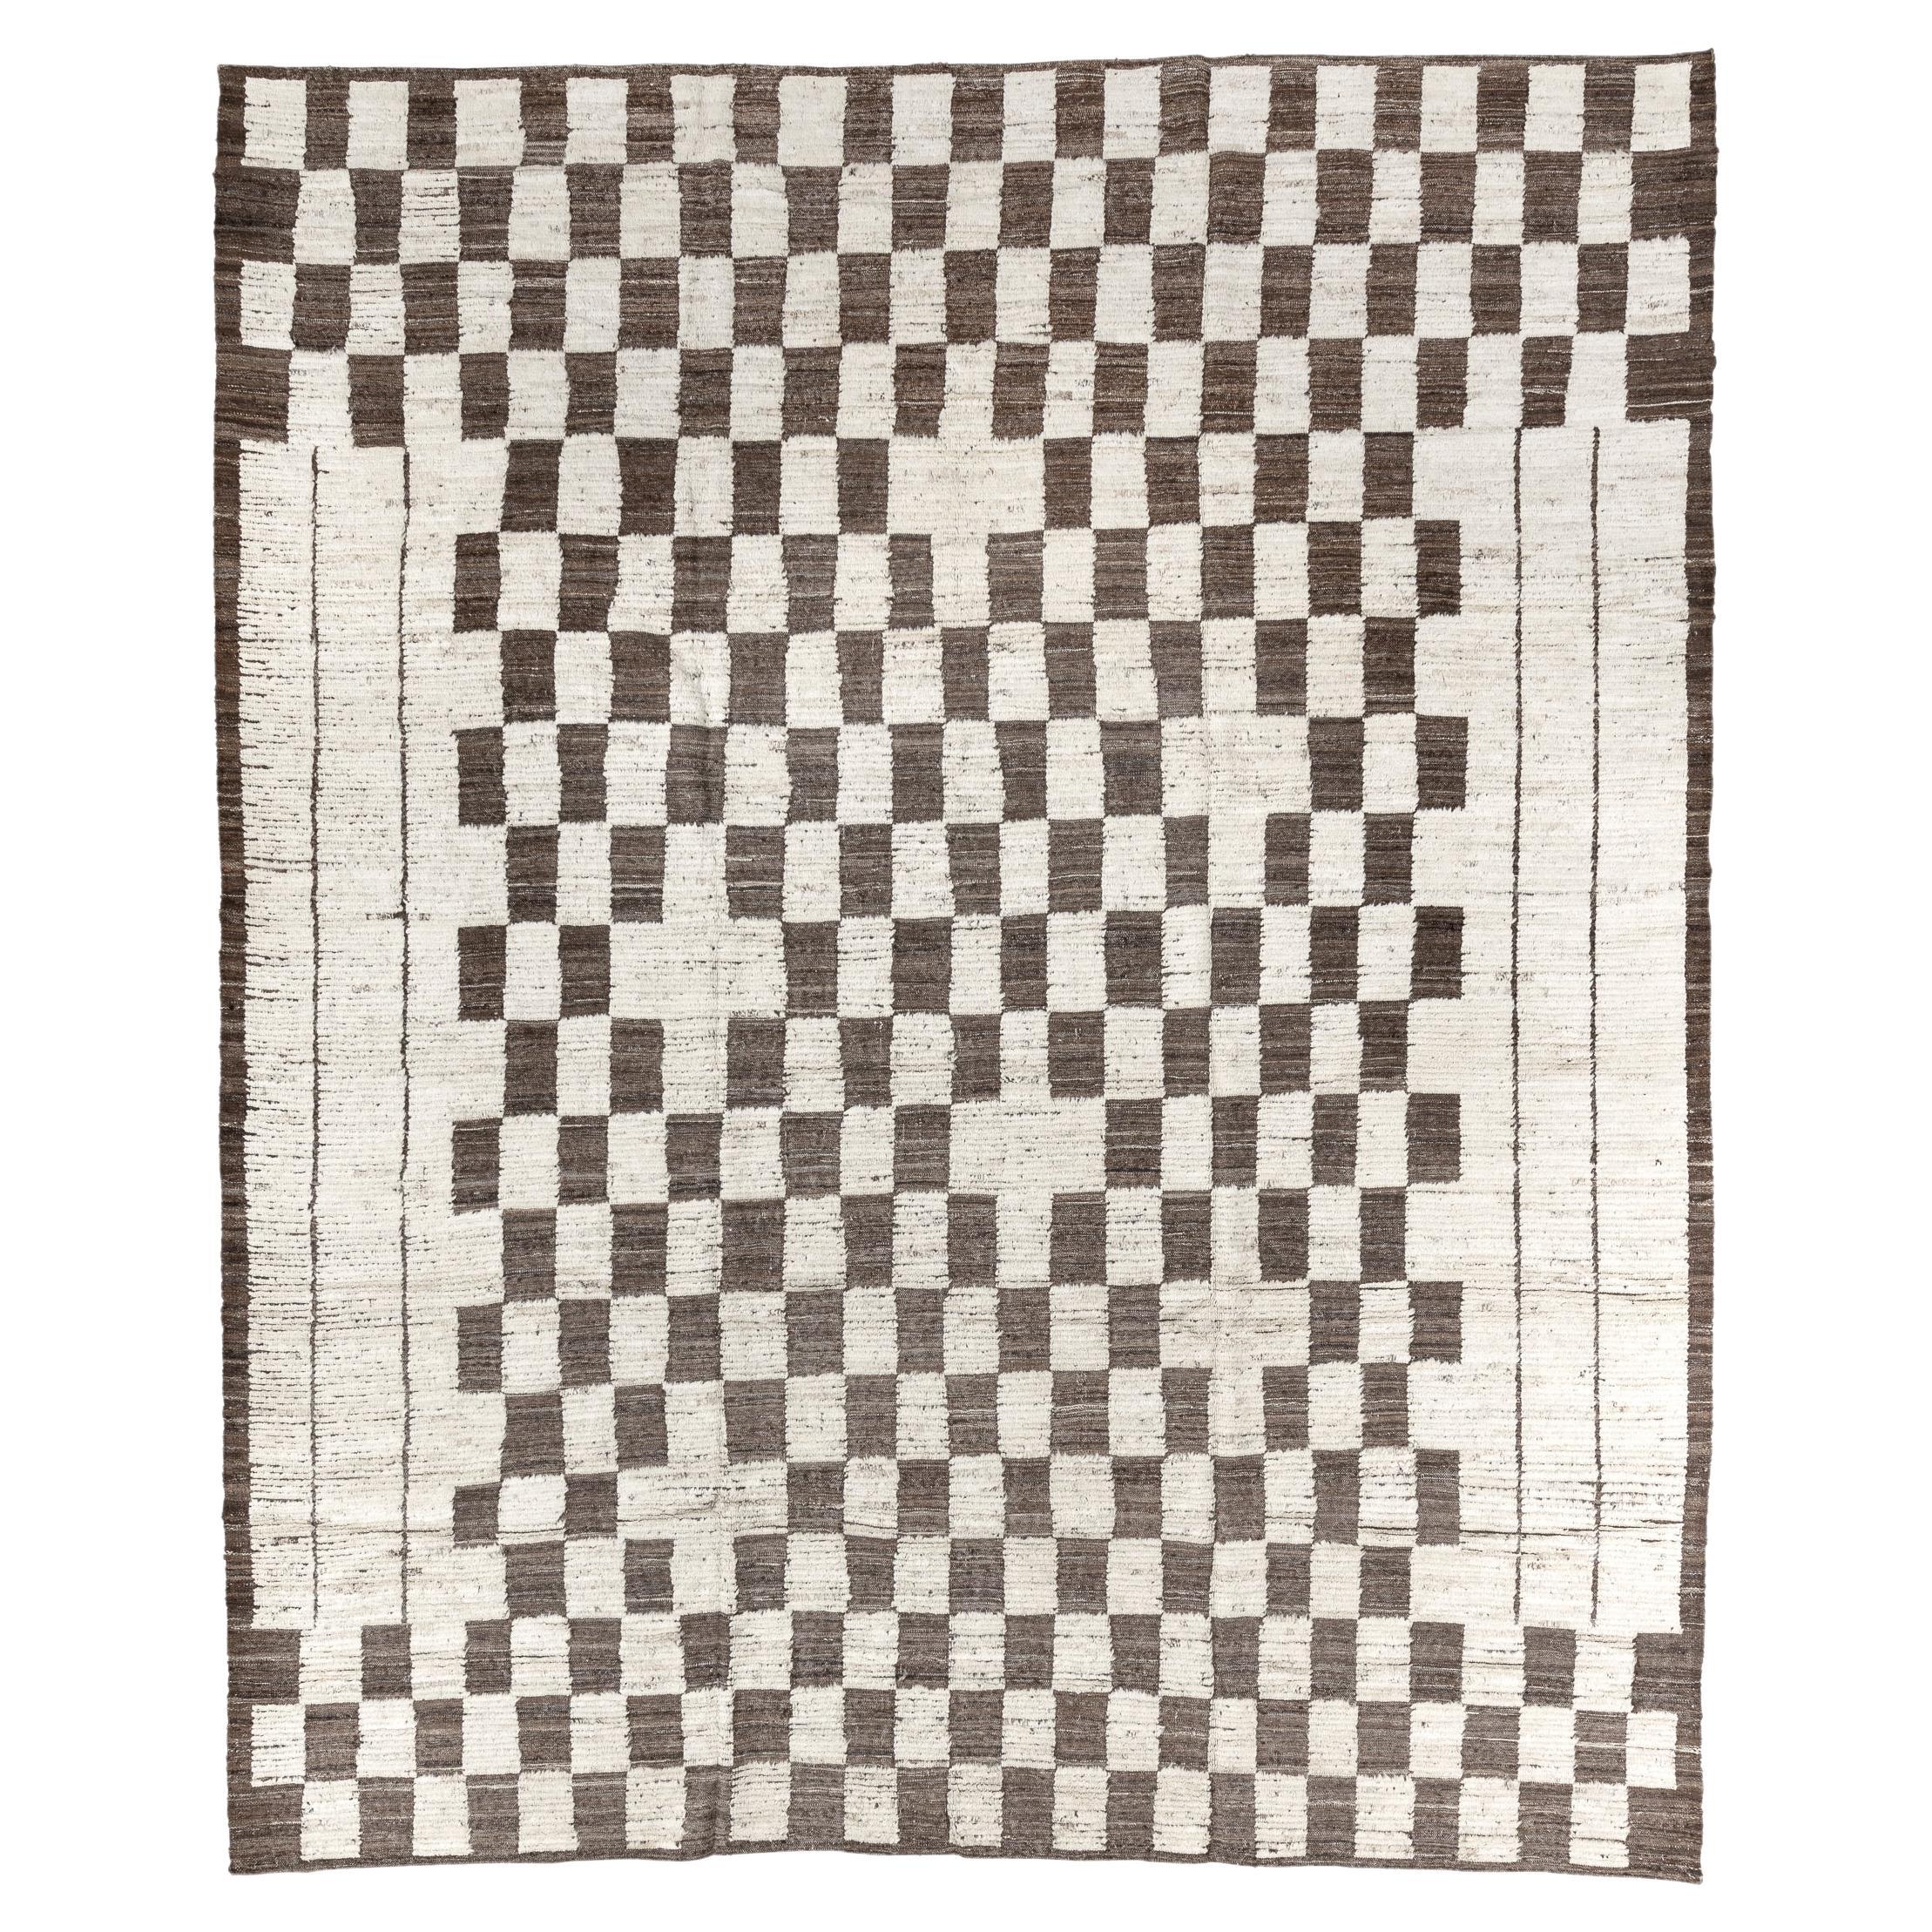 Checkers Board Tulu XL For Sale